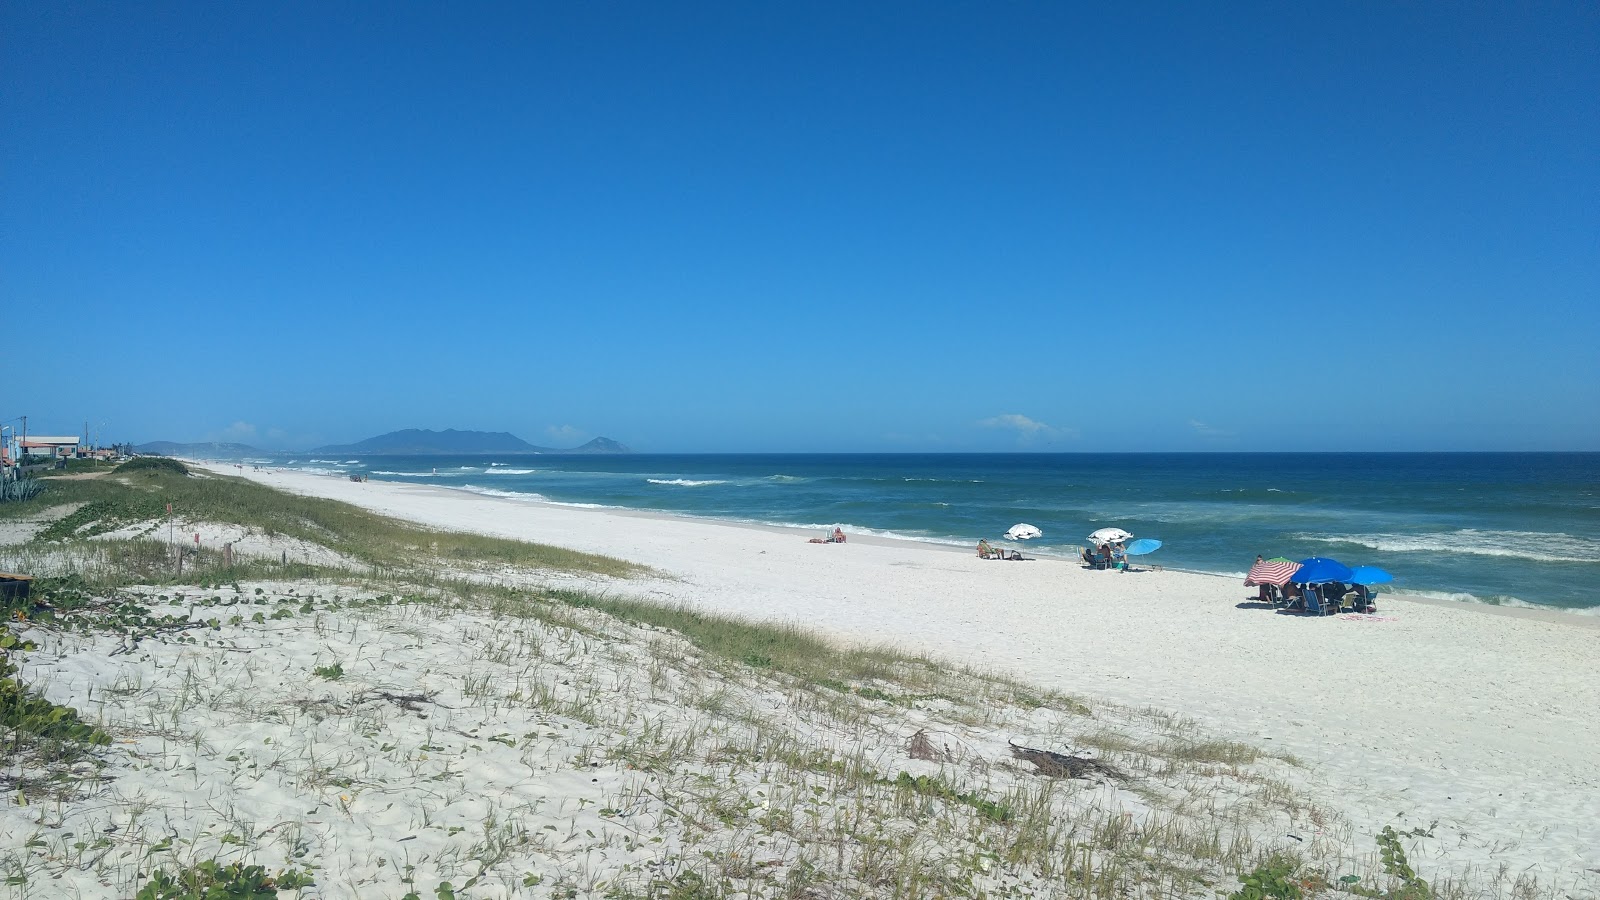 Fotografie cu Praia Grande de Figueira cu o suprafață de nisip fin alb